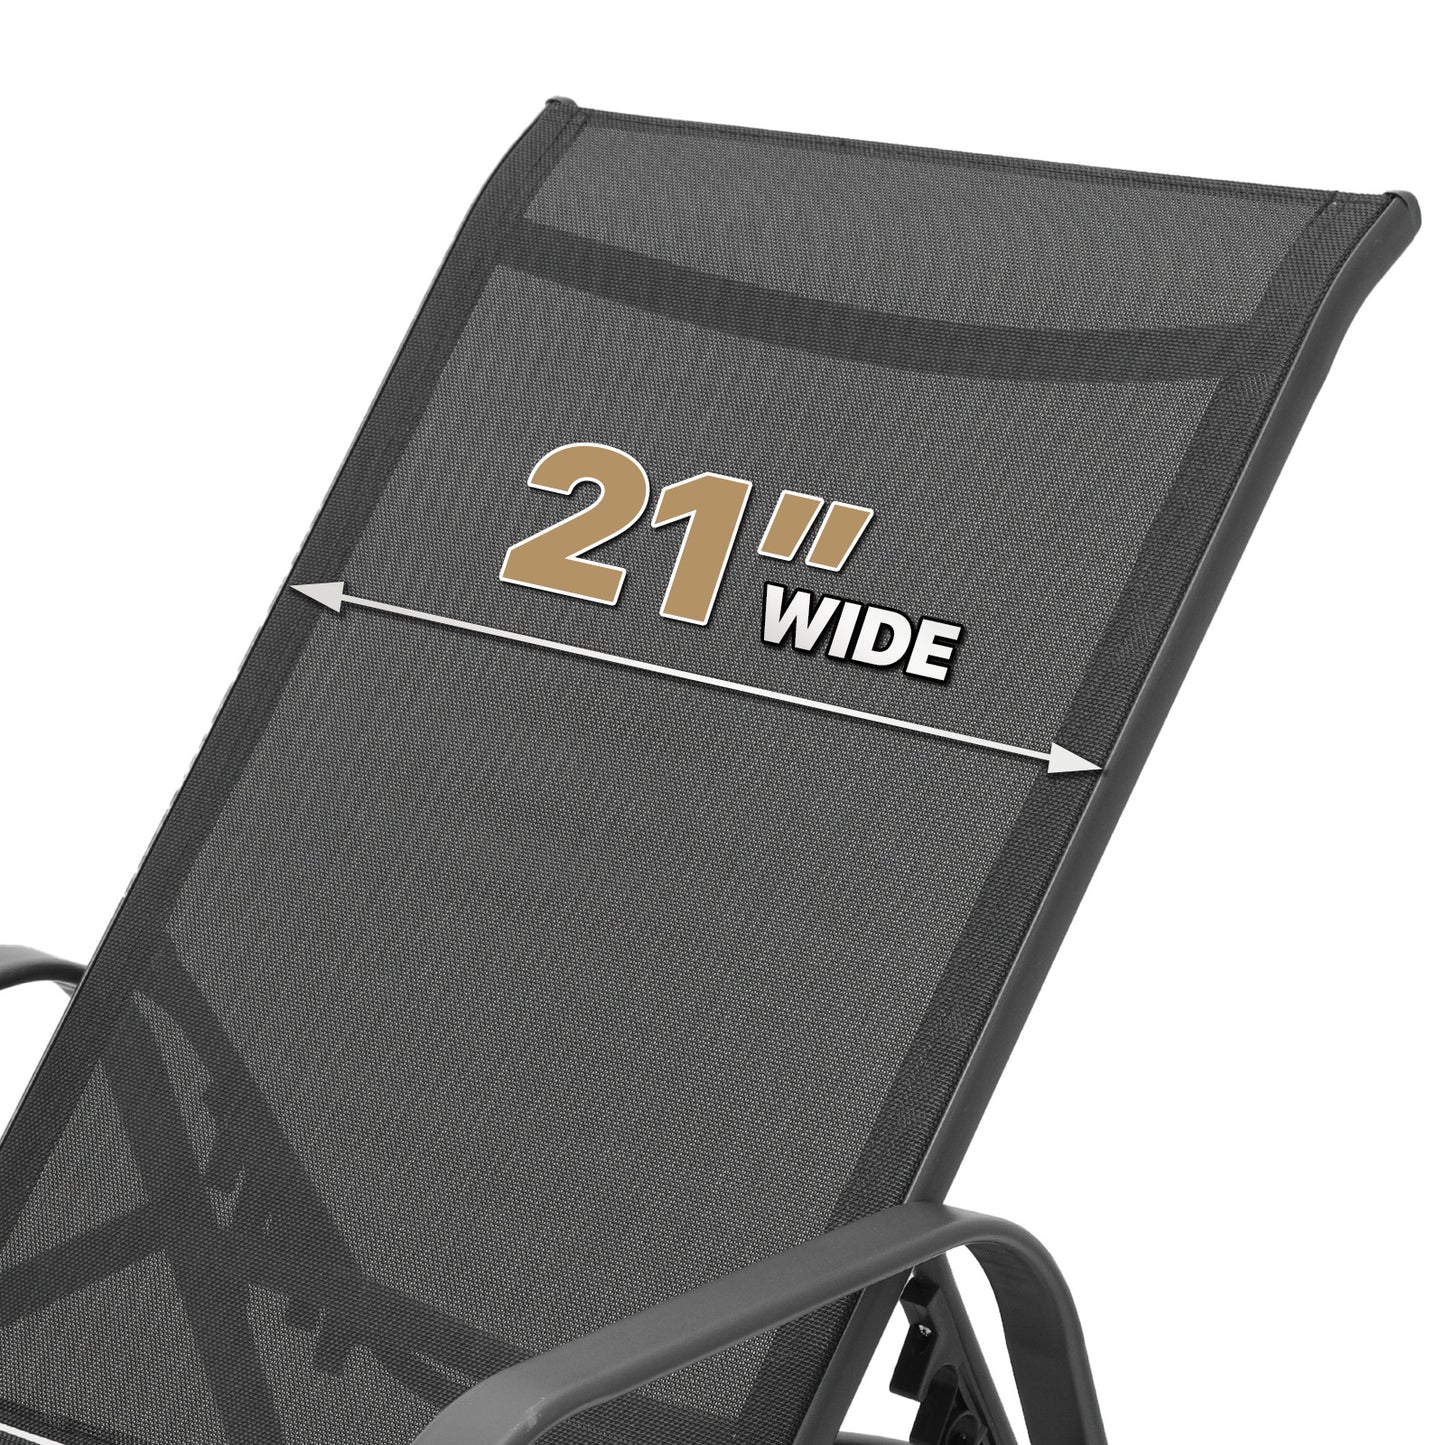 Set of 2 Lounge Chair - Adjustable Backrest - with Armrest